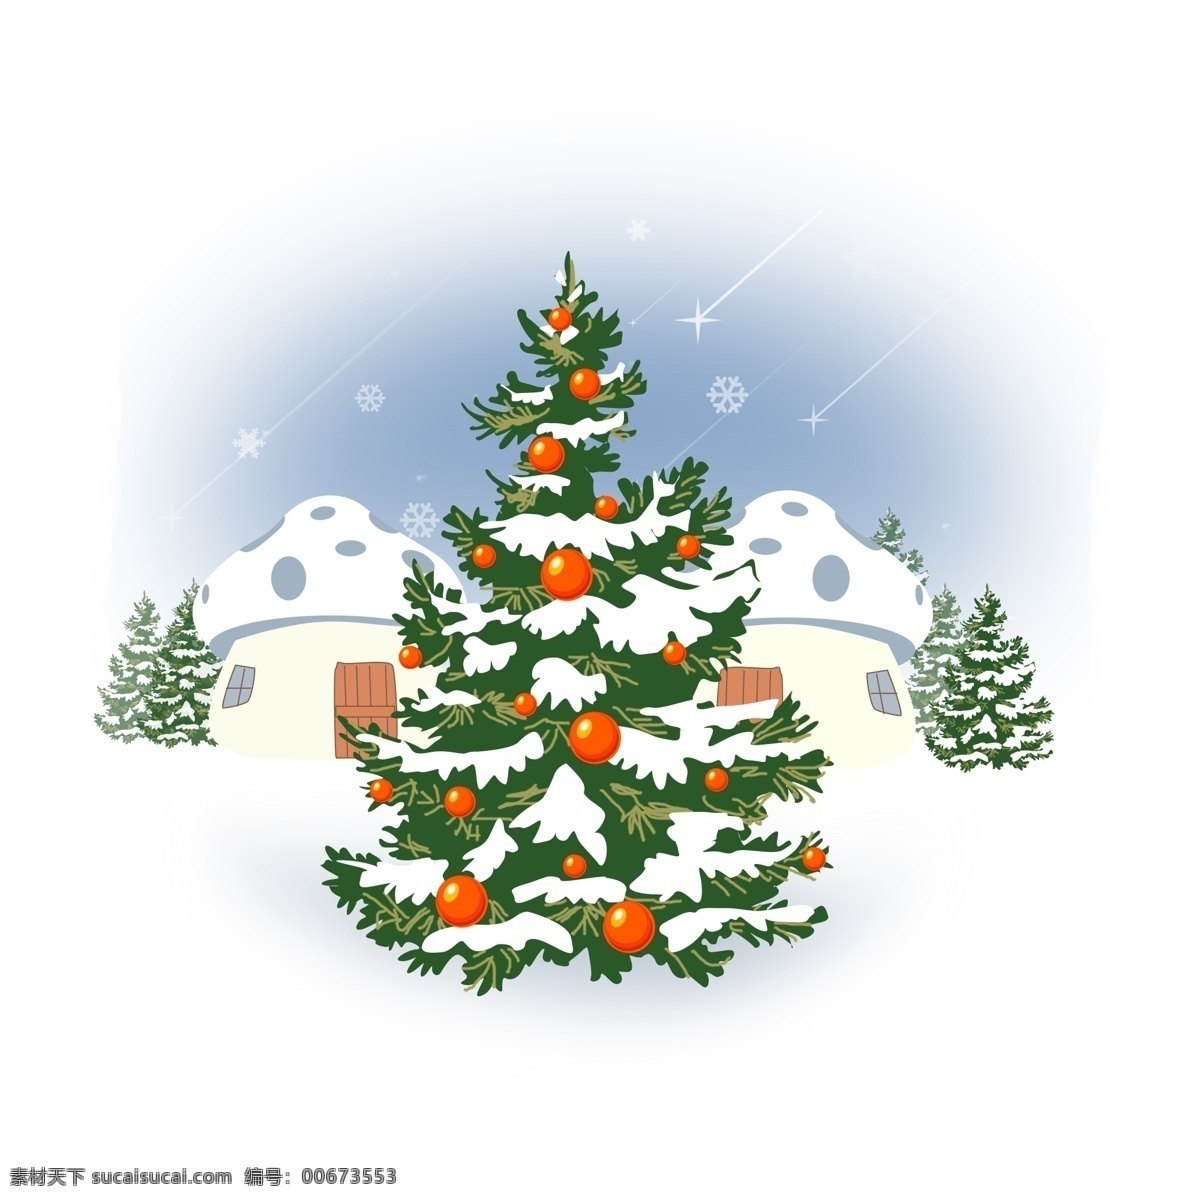 原创 插画 冰天雪地 圣诞节 冬天 雪花 圣诞树 节日 雪 大雪 圣诞 蘑菇 蘑菇屋 寒冷 冷 夜晚 树 节气 配图